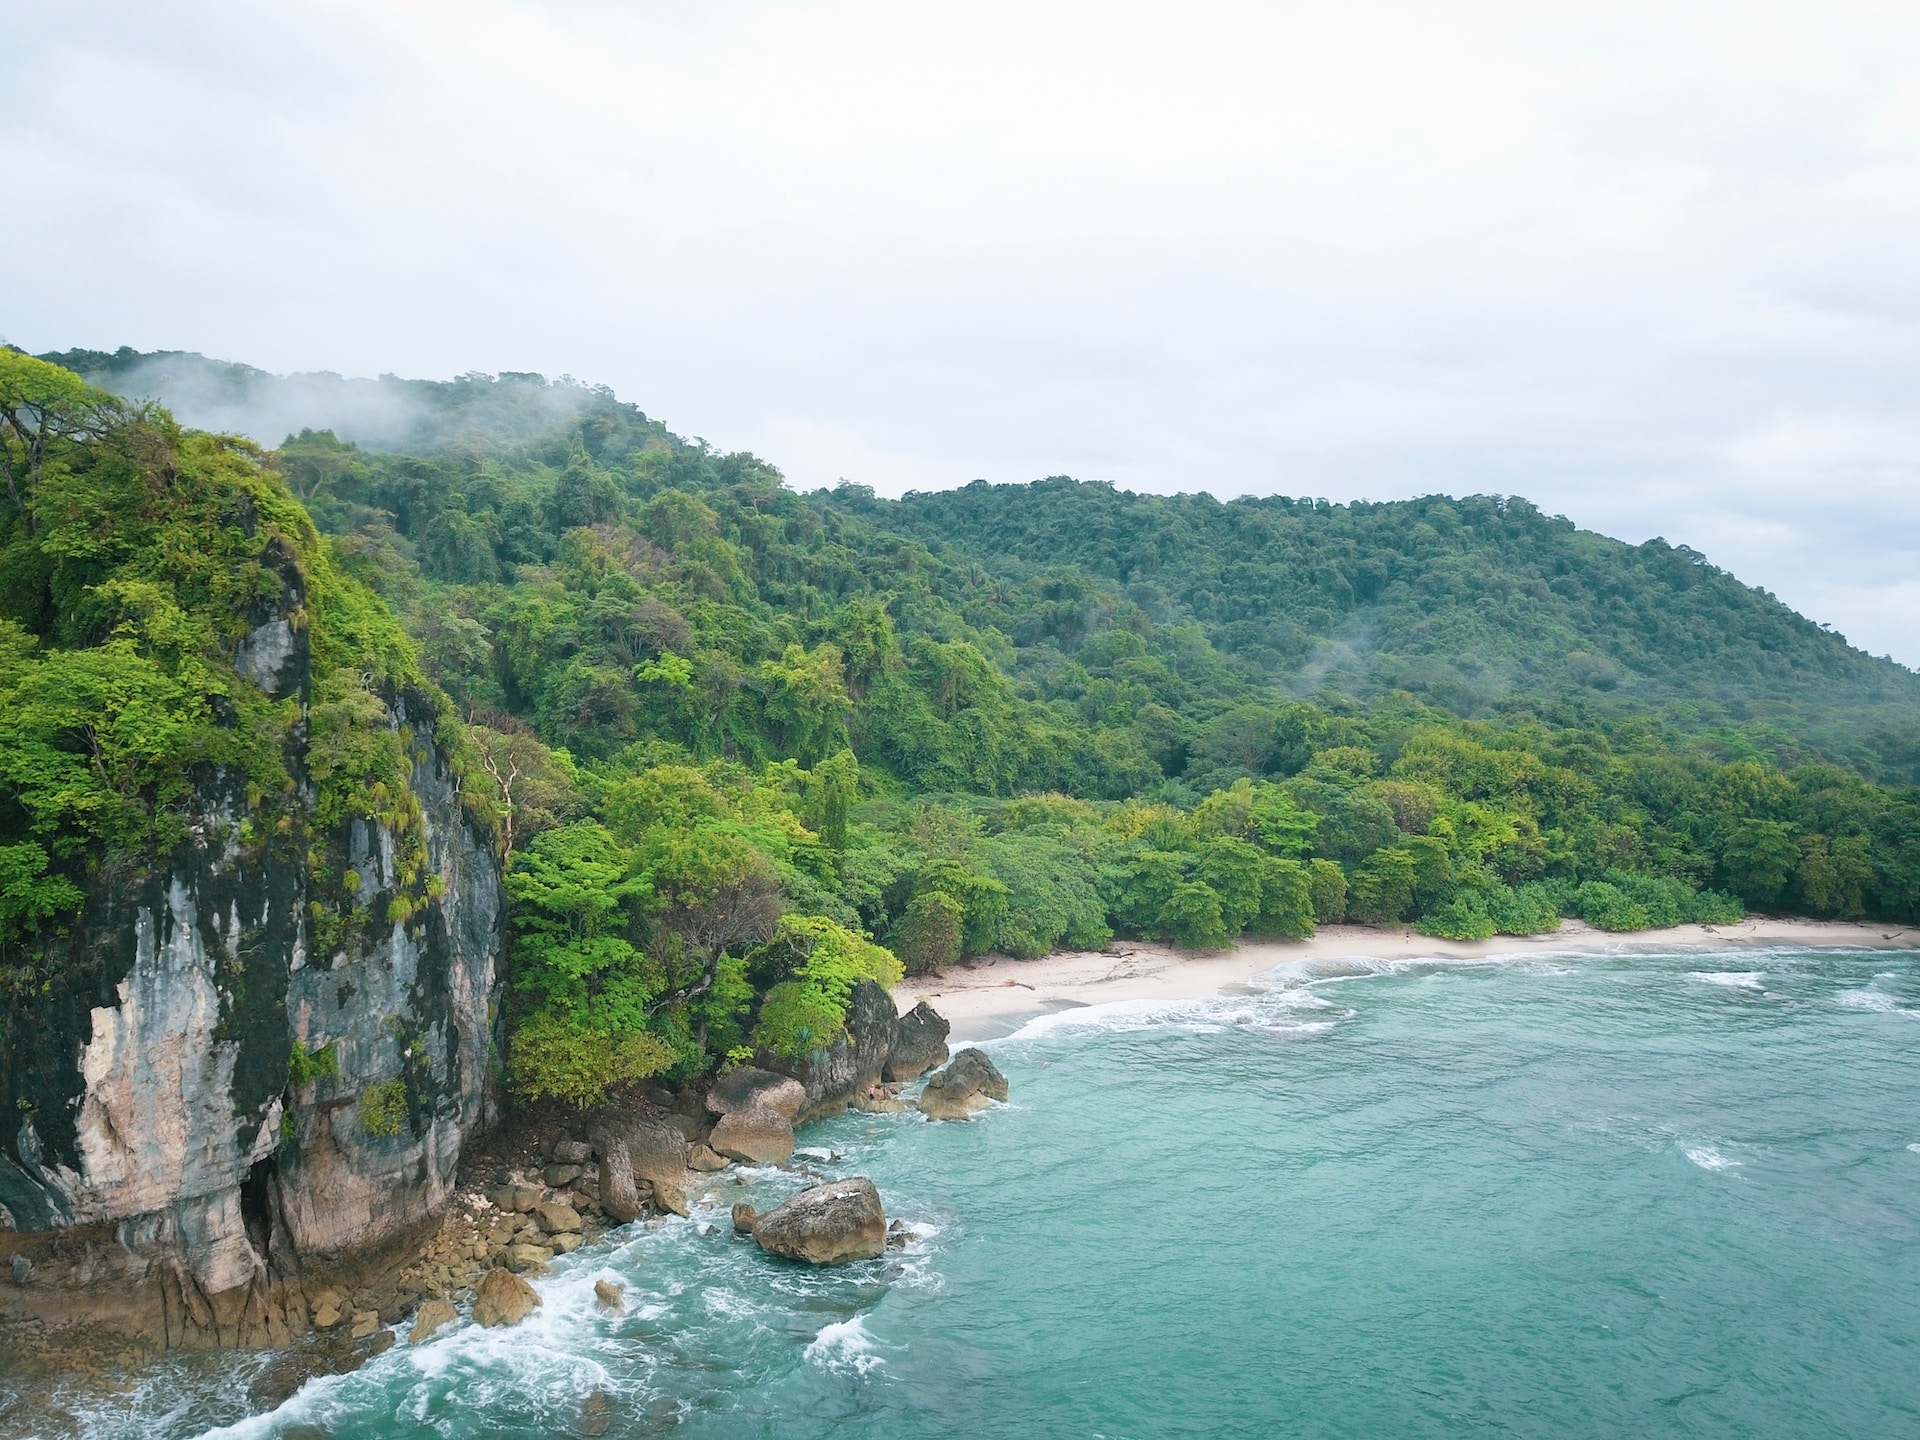 Coastal area, Costa Rica